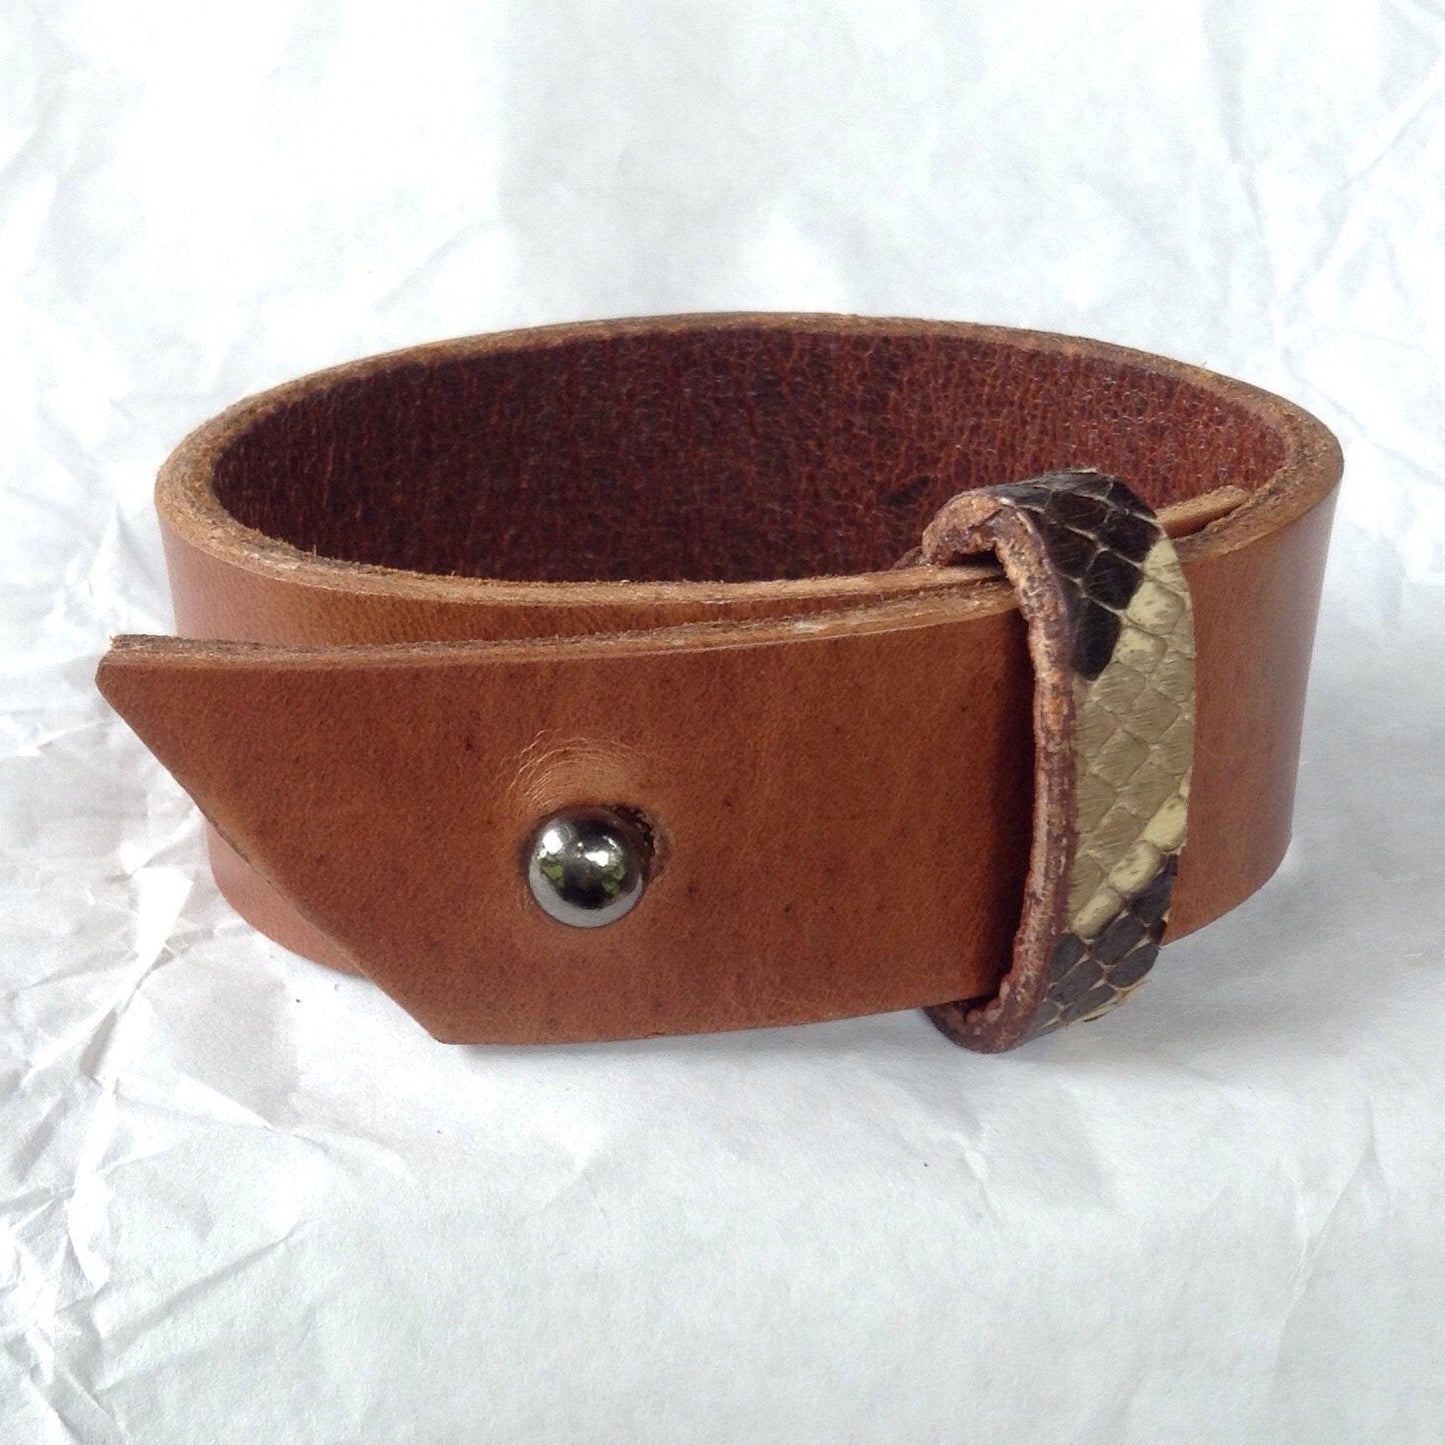 Belt cuff style Python strap, Oiled Buckskin lined Caramel leather bracelet.